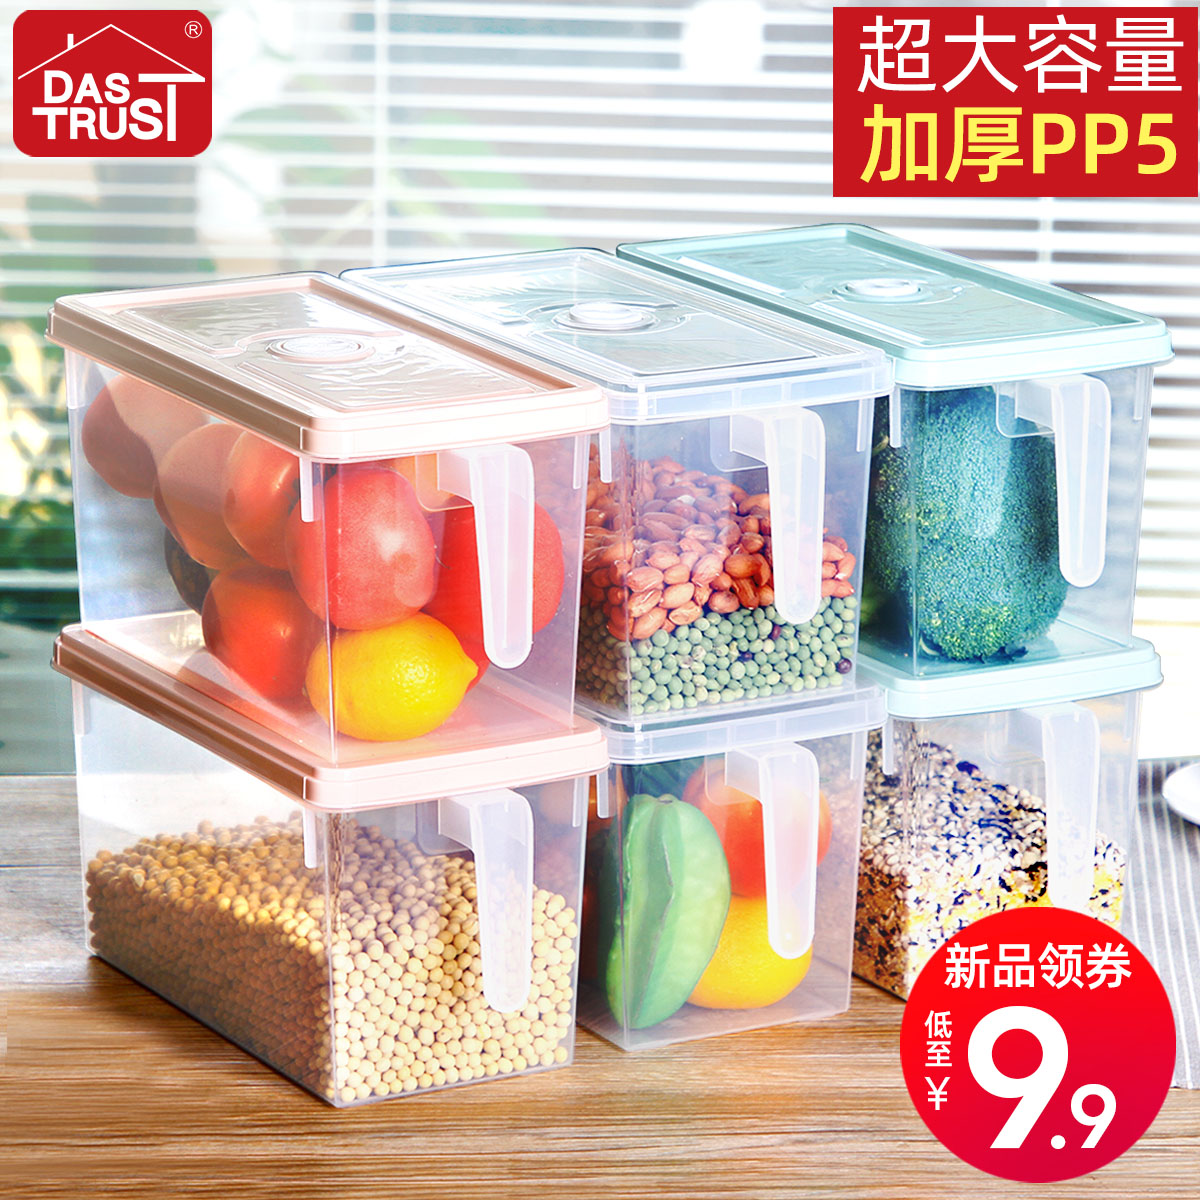 冰箱收纳盒长方形抽屉式鸡蛋盒食品冷冻盒厨房收纳保鲜塑料储物盒